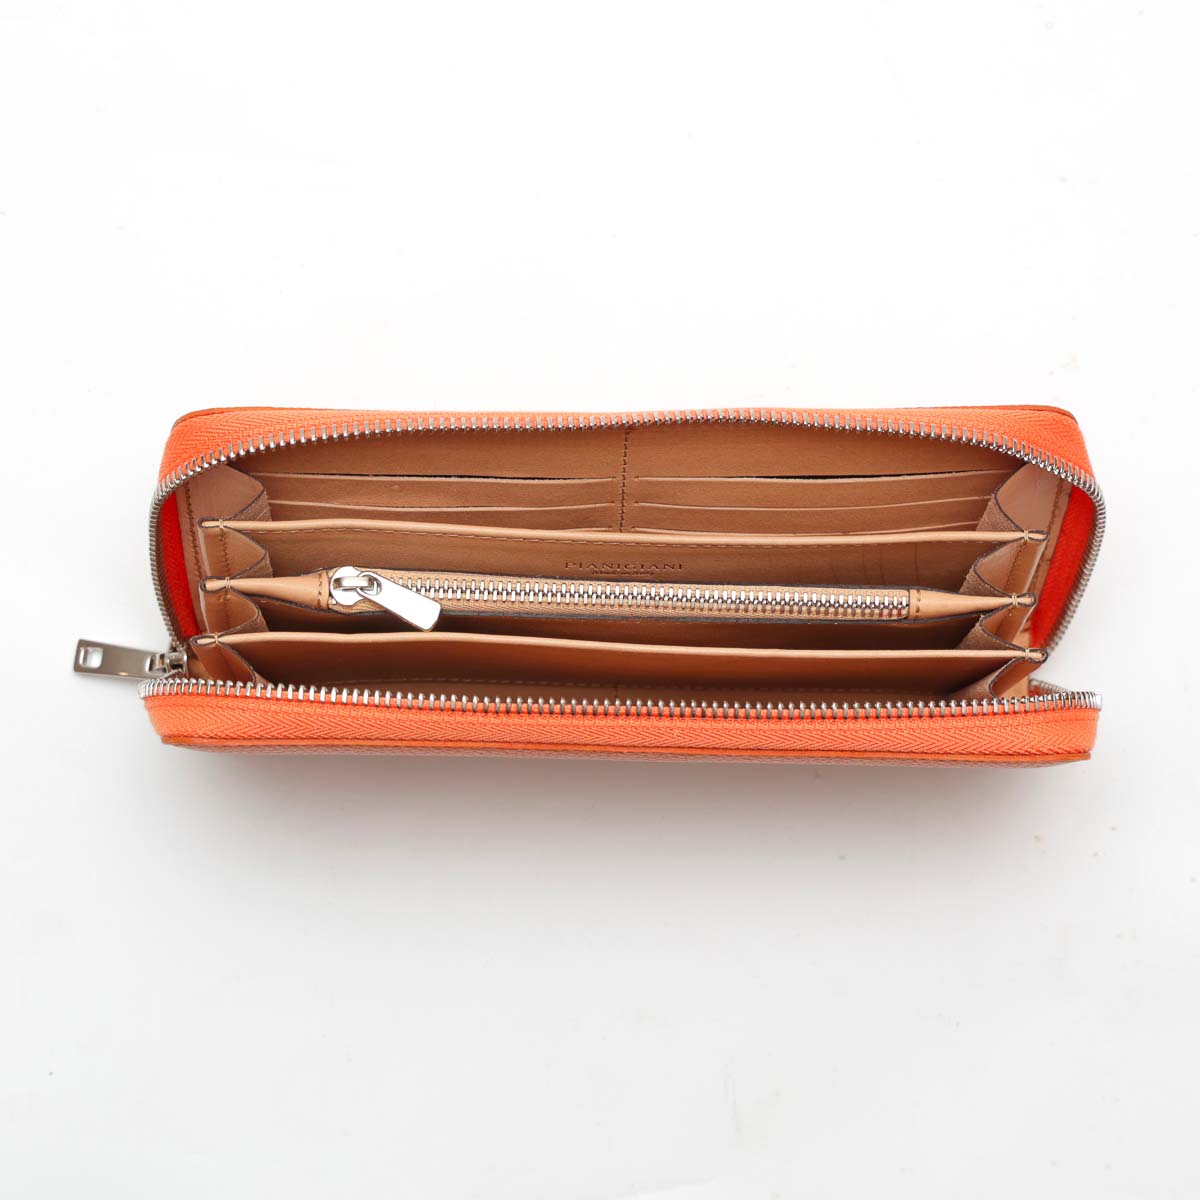 Portafoglio Zip - modello compatto in pelle arancio con tasca per banconote, spazi carte e portamonete, chiusura con zip by Pianigiani